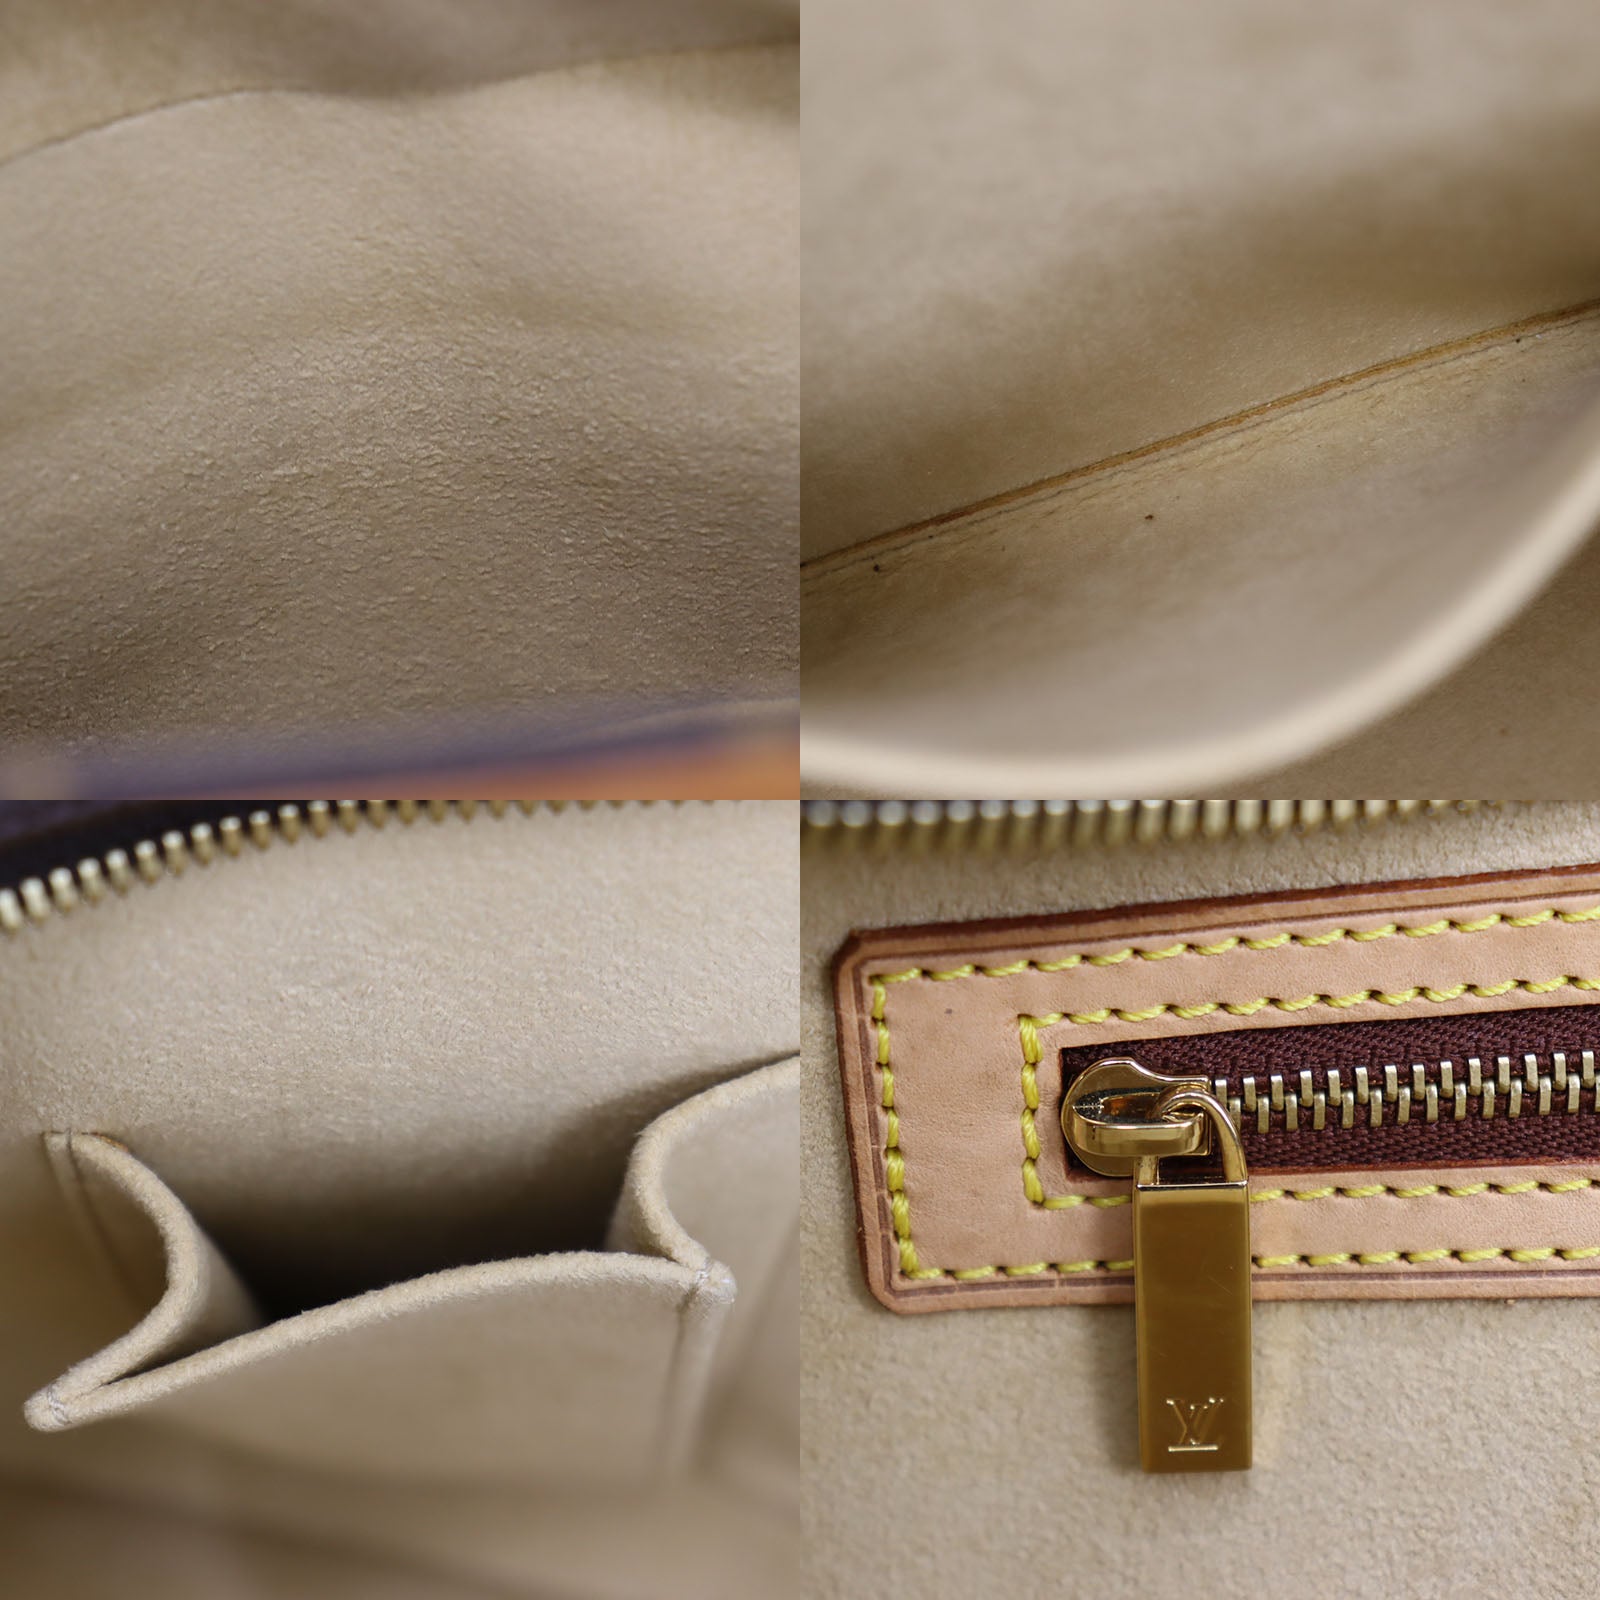 Louis Vuitton Monogram LV Cite GM Shoulder Hand Bag M51181